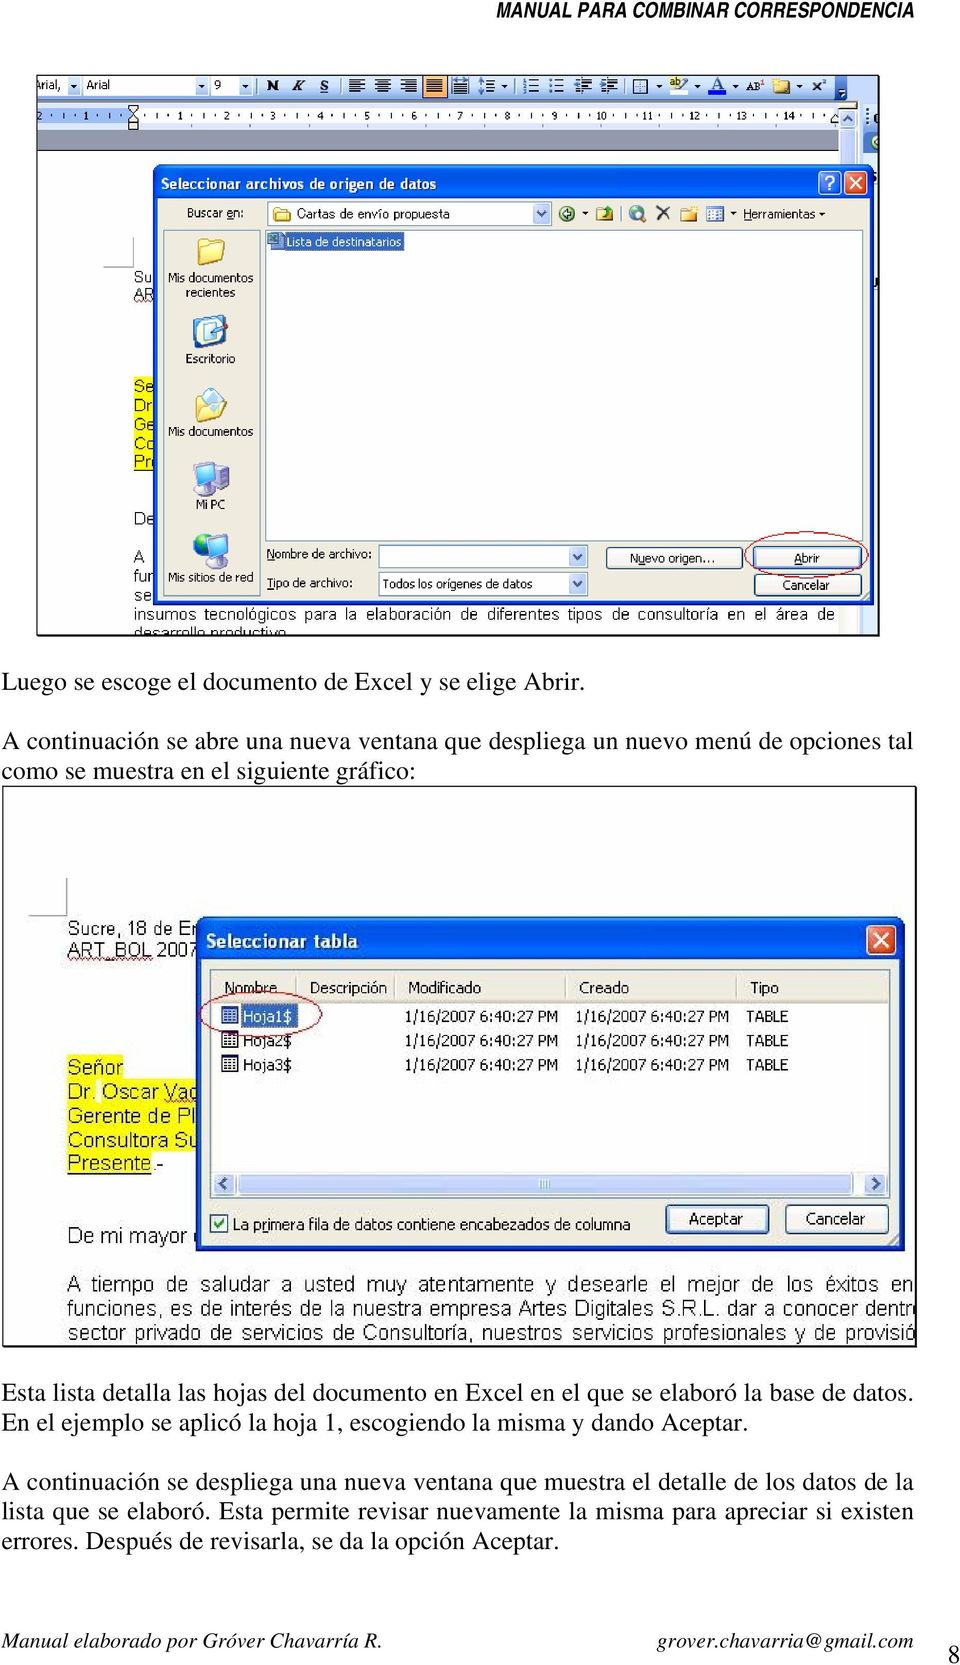 las hojas del documento en Excel en el que se elaboró la base de datos. En el ejemplo se aplicó la hoja 1, escogiendo la misma y dando Aceptar.